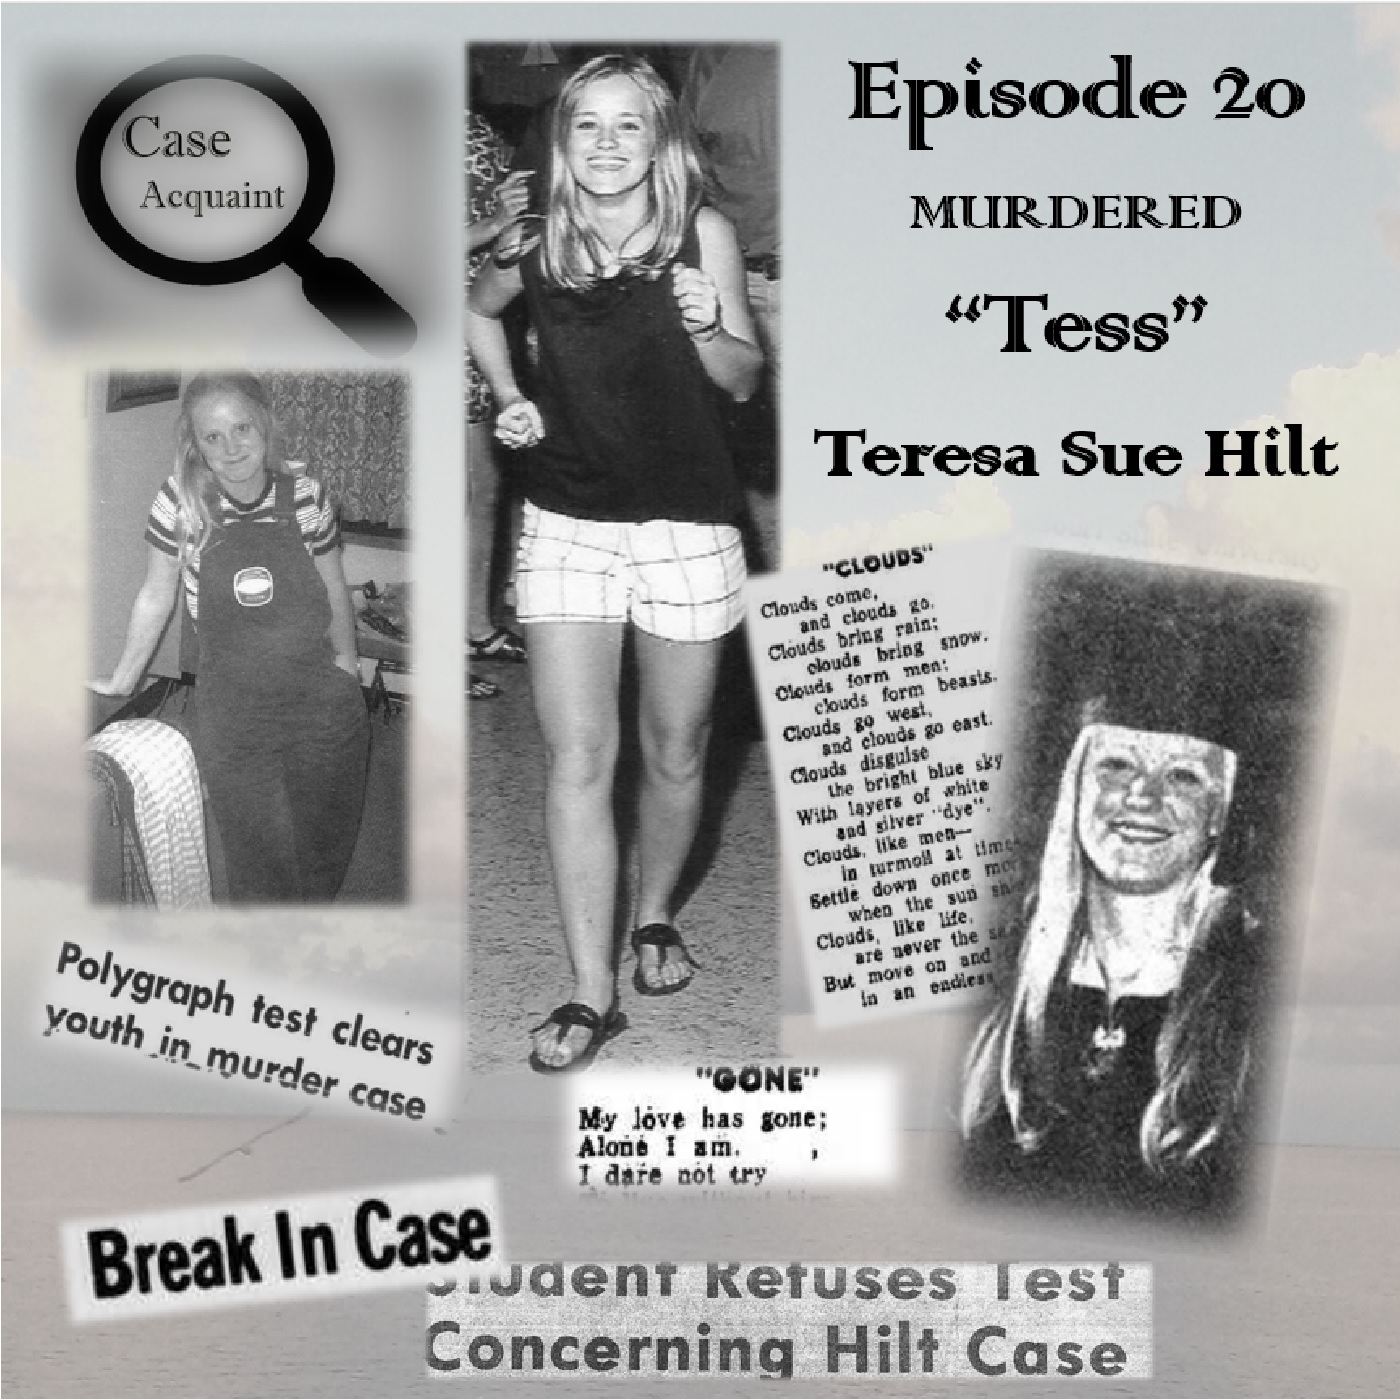 Episode 20 The Murder of Teresa Sue Hilt ”Tess”